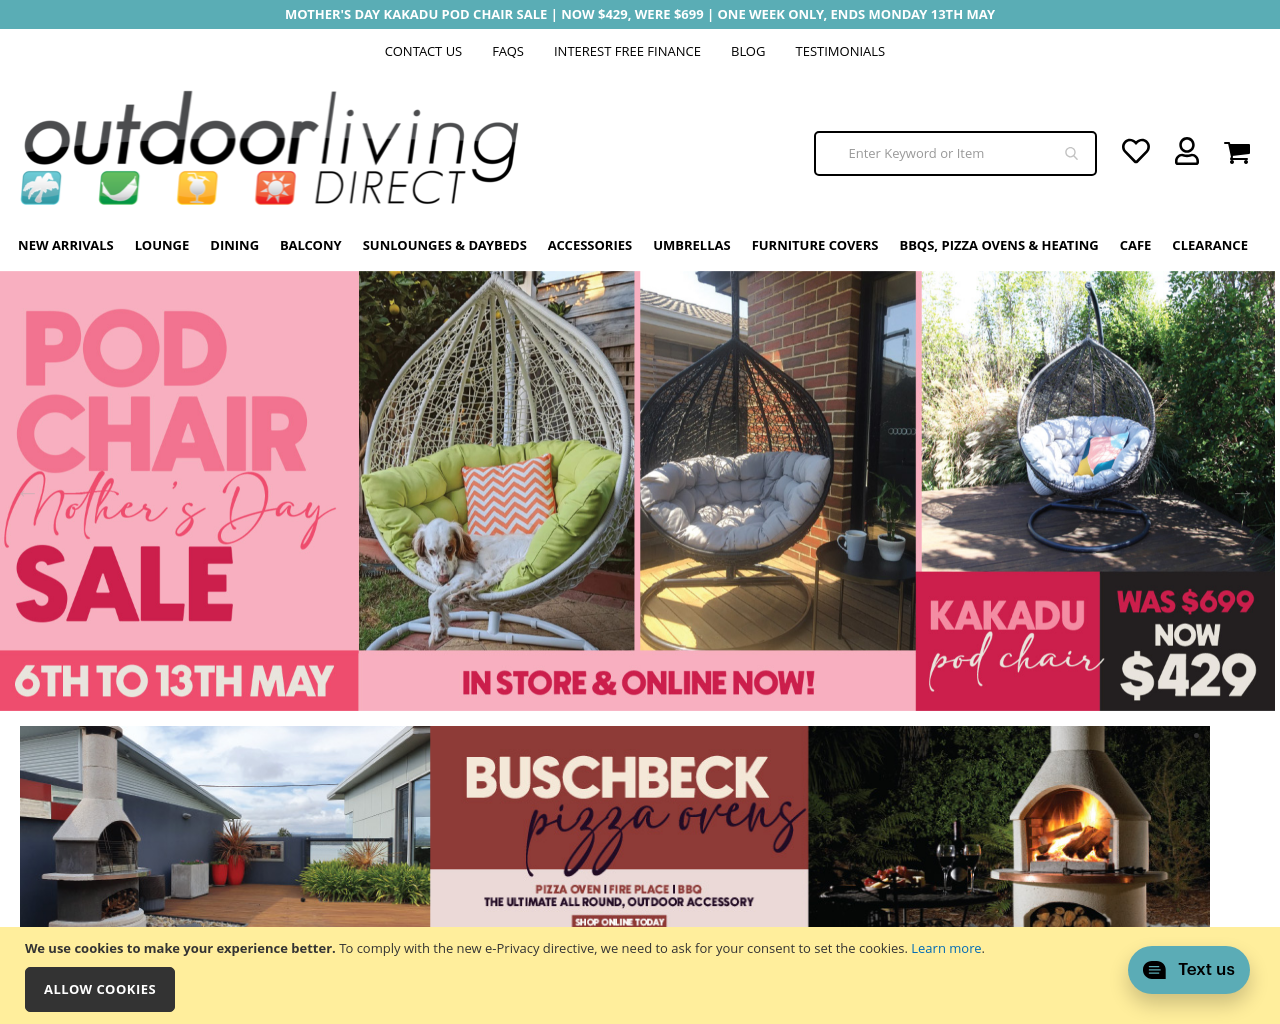 outdoorlivingdirect.com.au